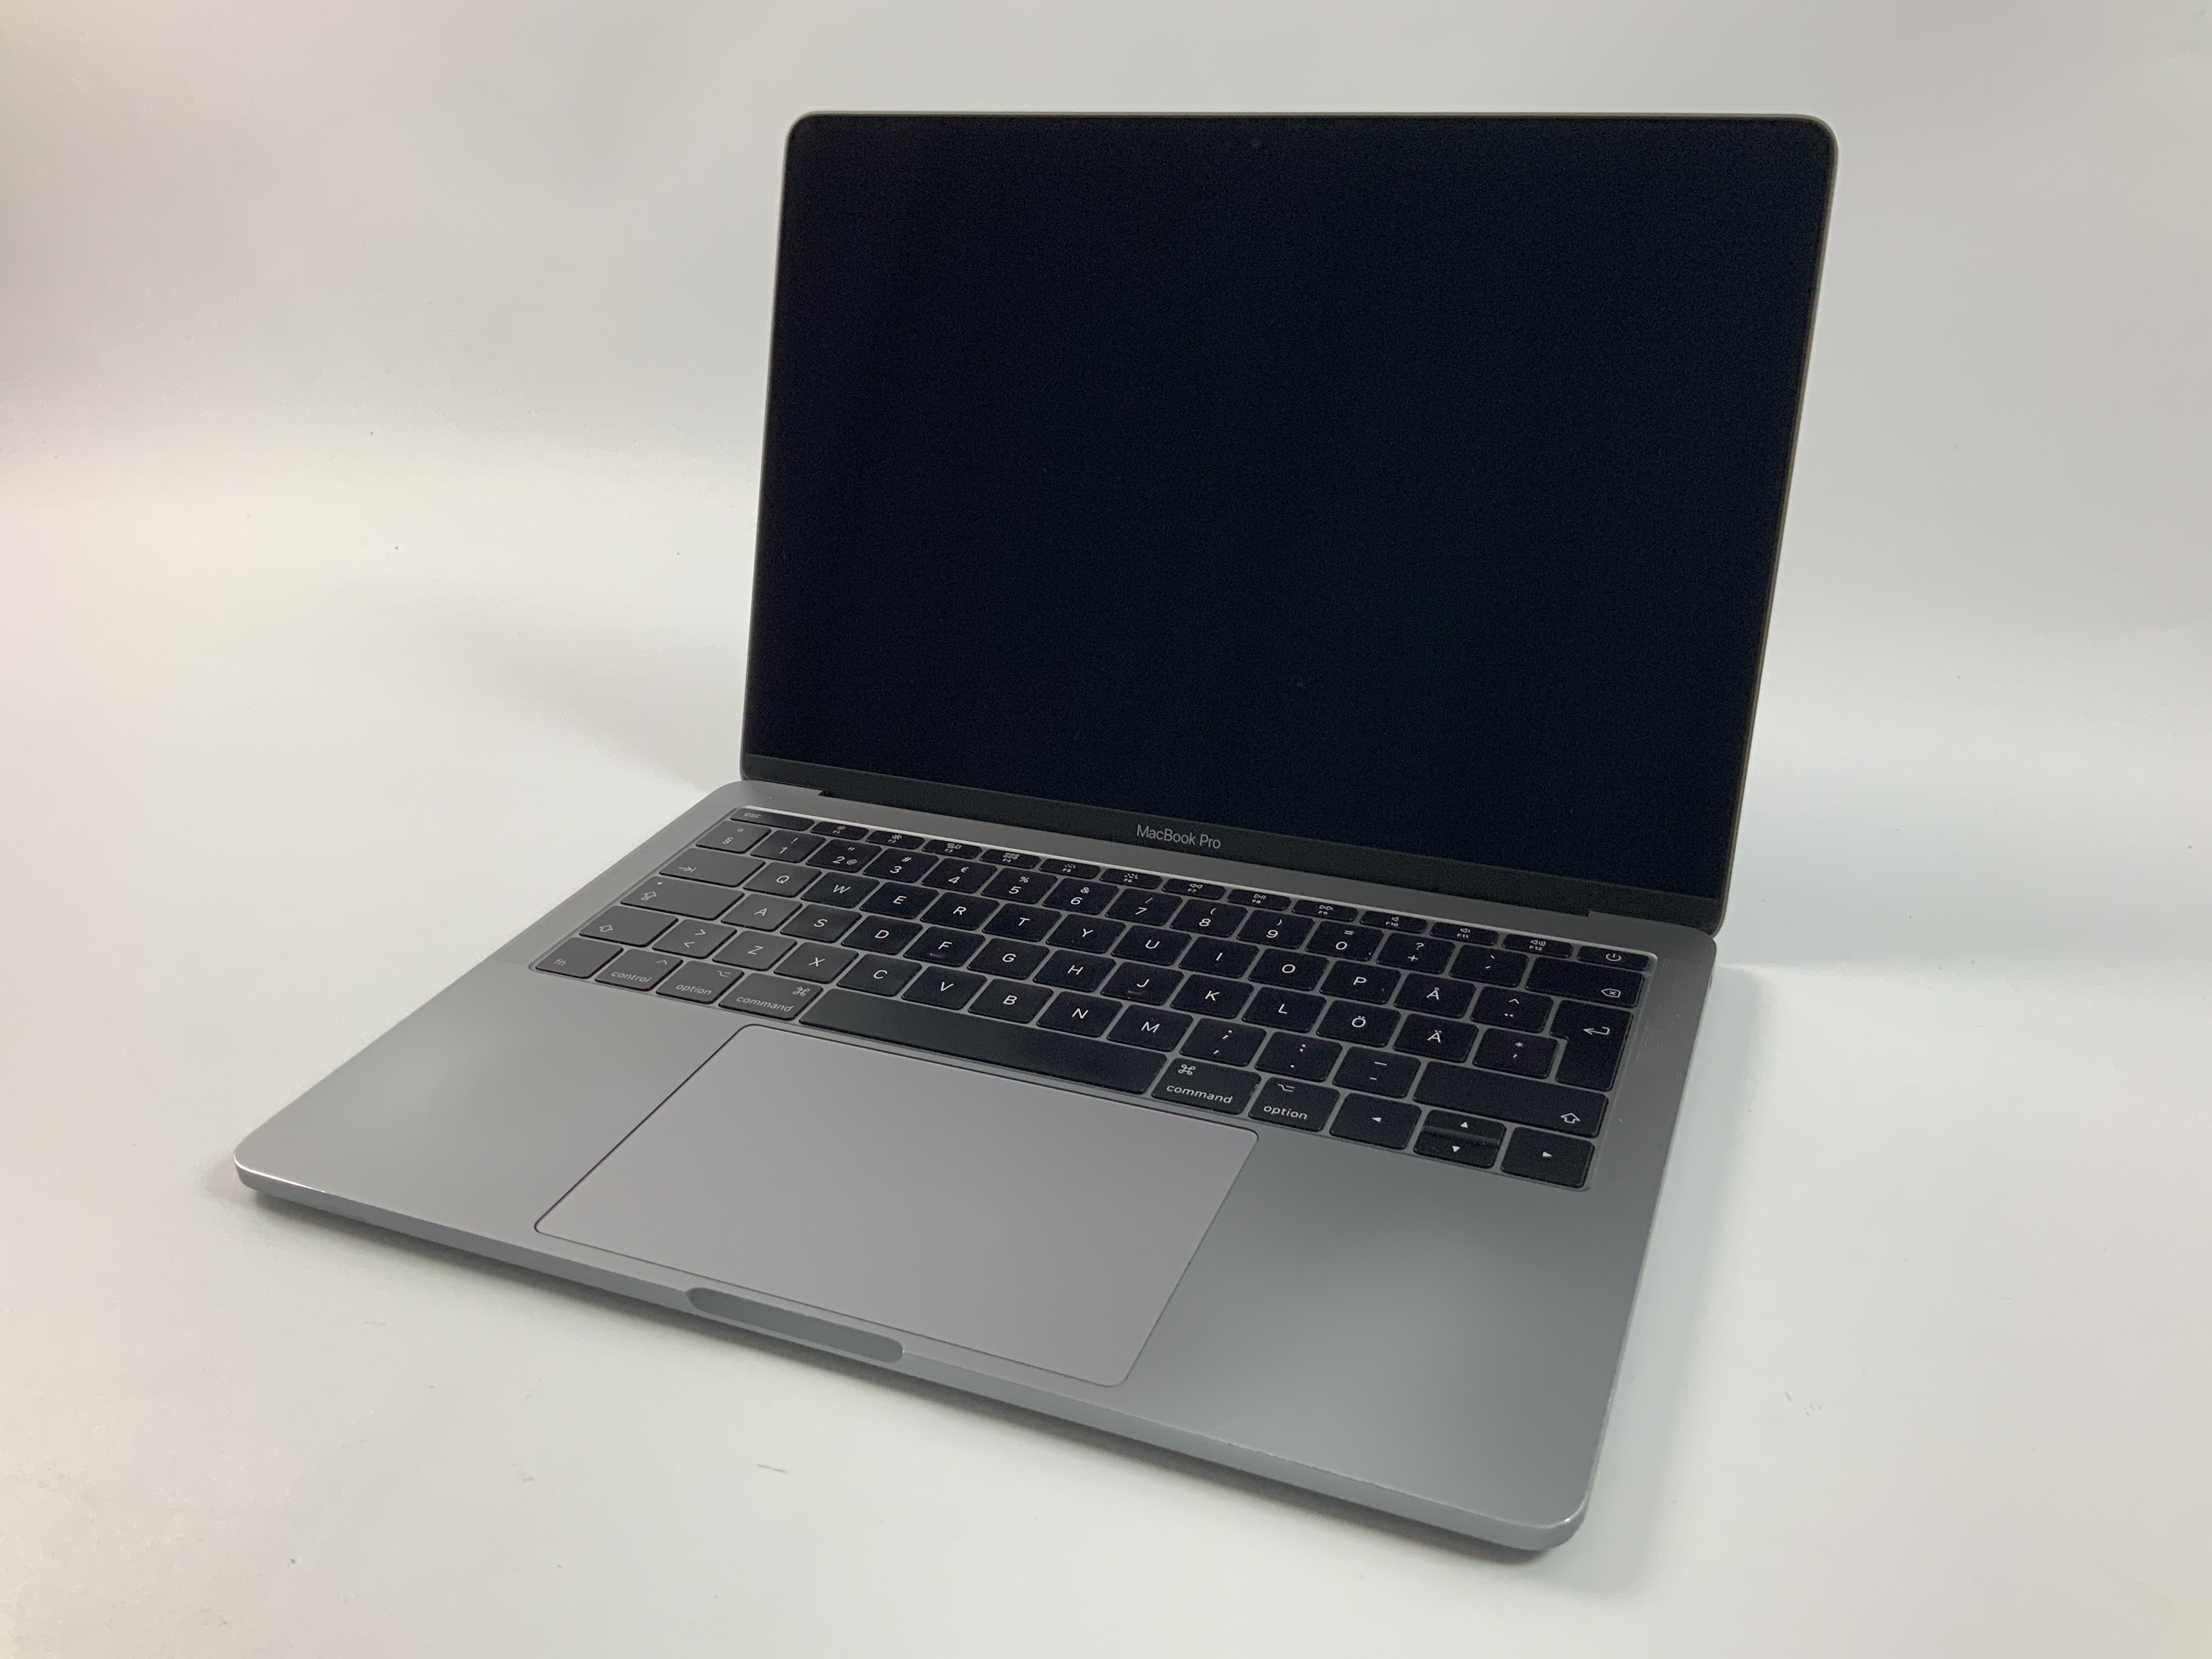 MacBook Pro 13" 2TBT Mid 2017 (Intel Core i5 2.3 GHz 8 GB RAM 128 GB SSD), Space Gray, Intel Core i5 2.3 GHz, 8 GB RAM, 128 GB SSD, Kuva 1